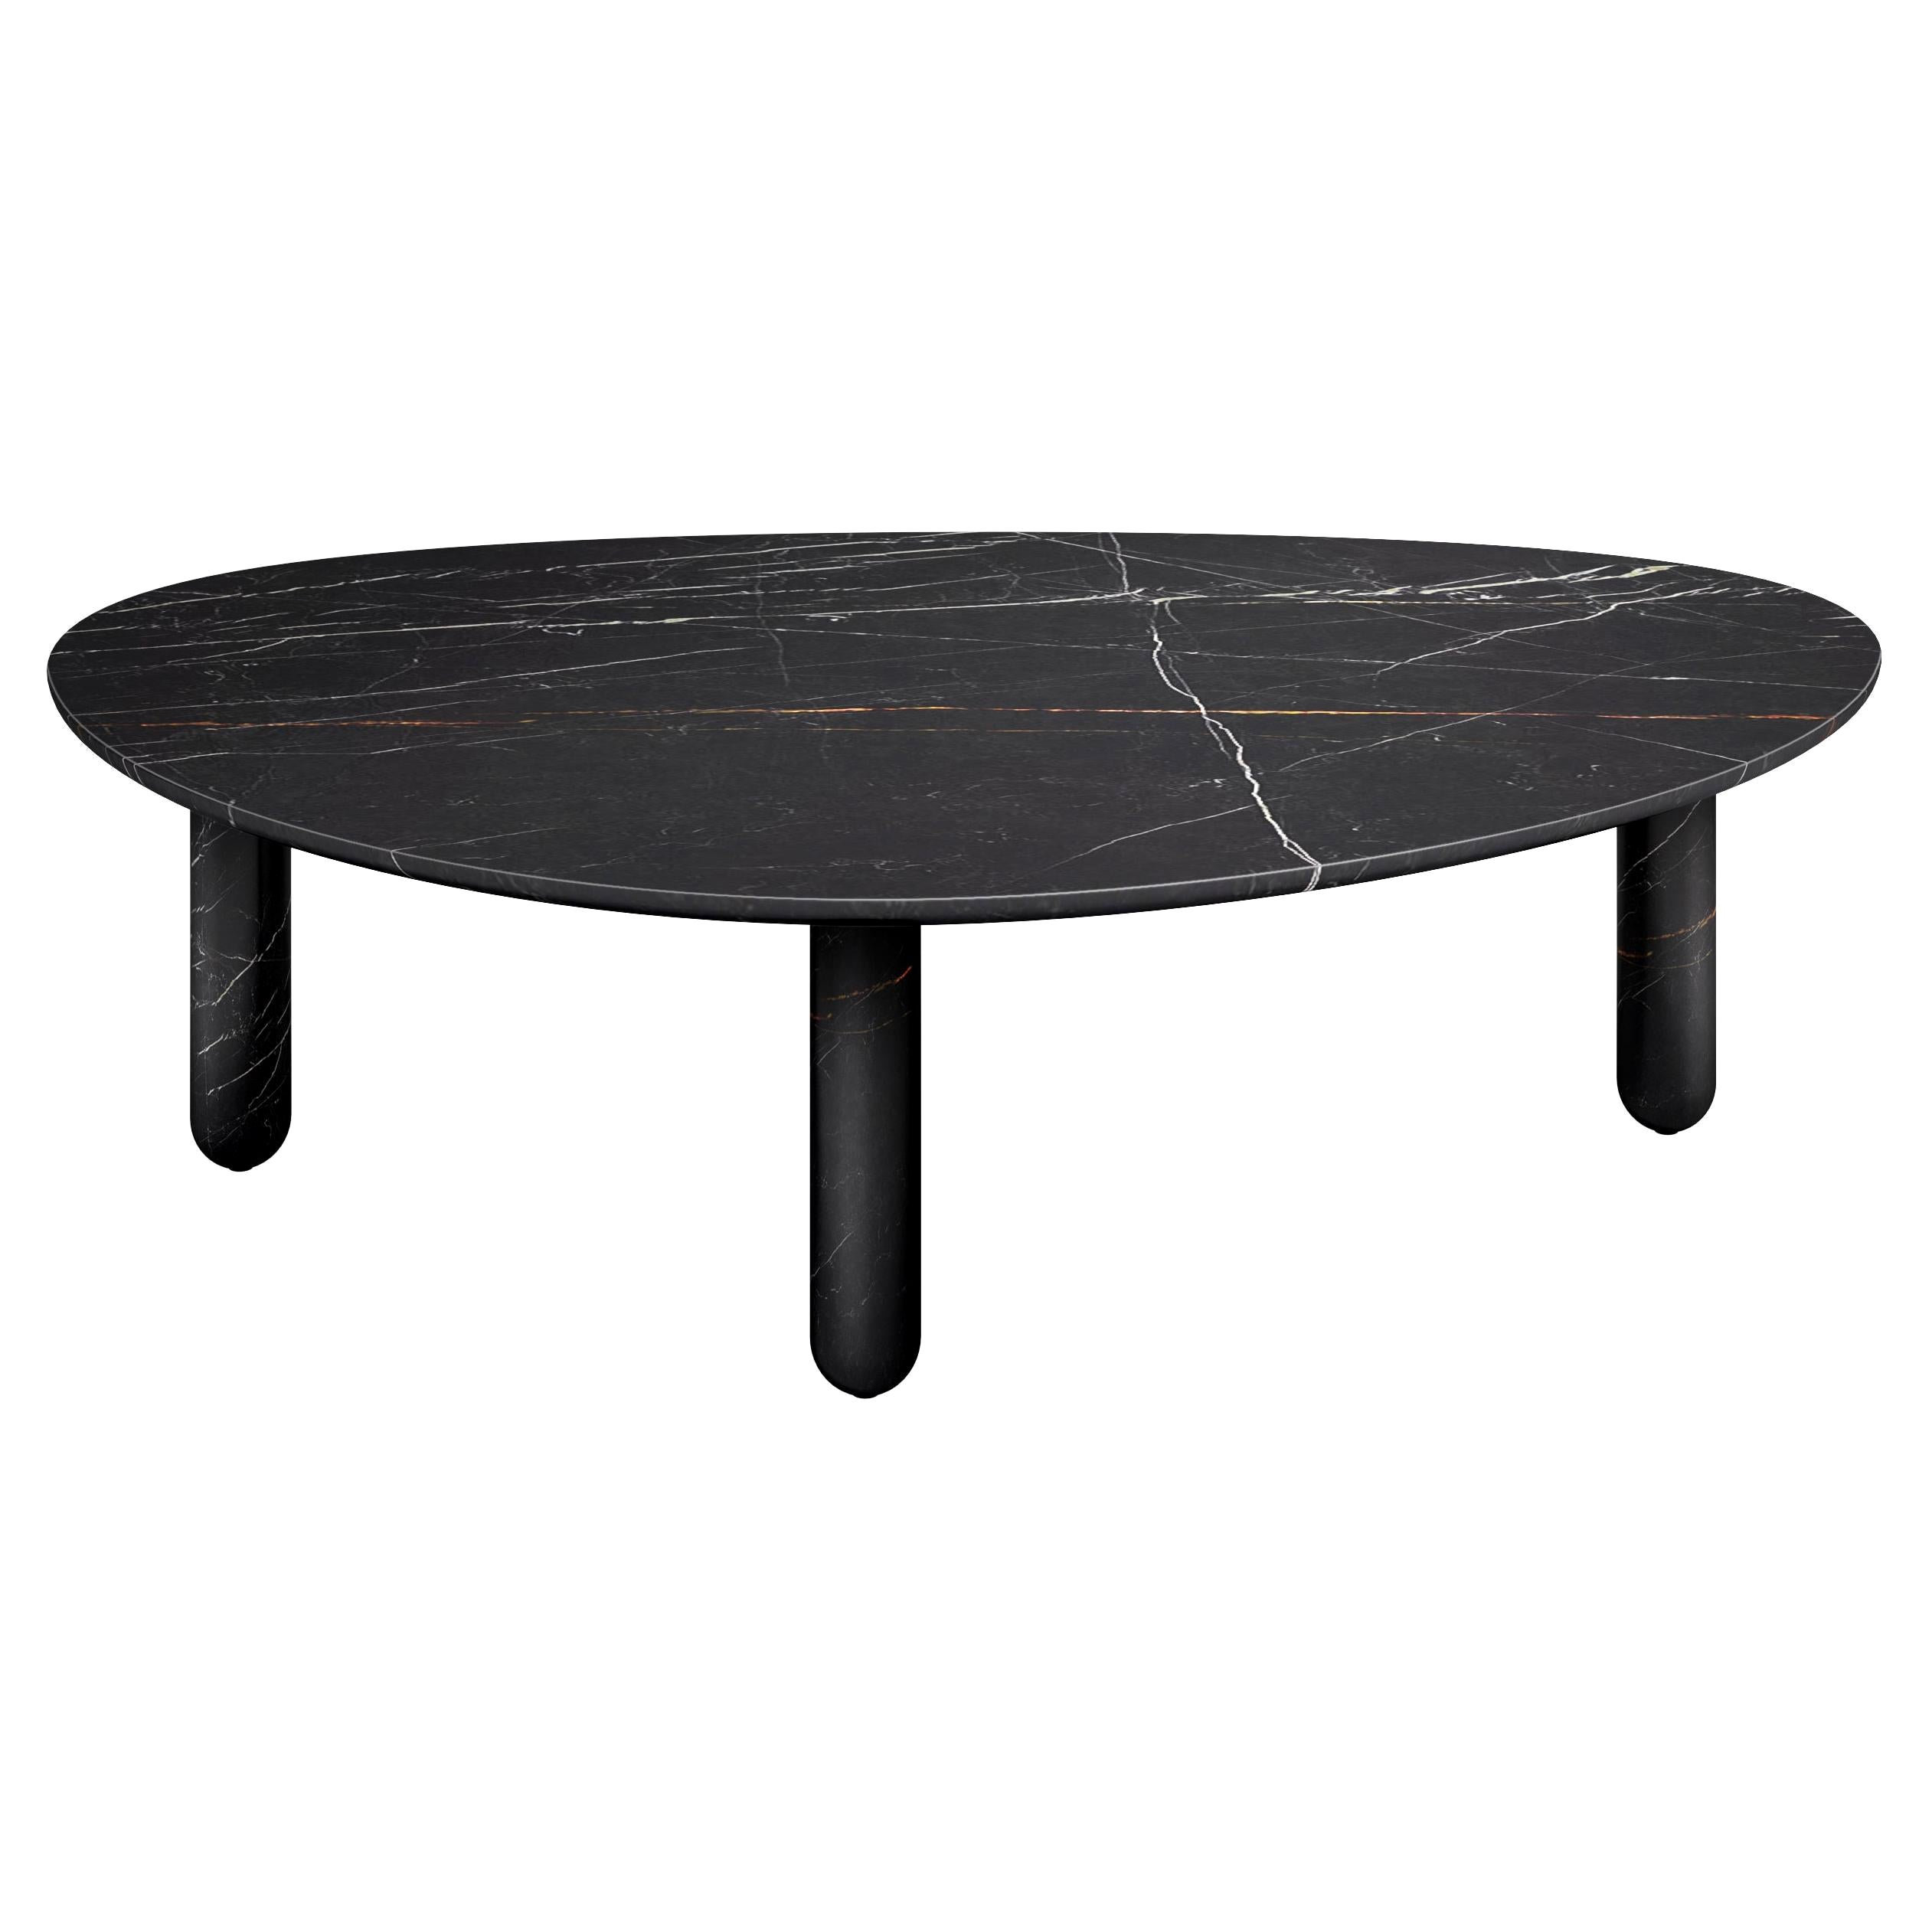 Table basse contemporaine à trois pieds en marbre arrondi